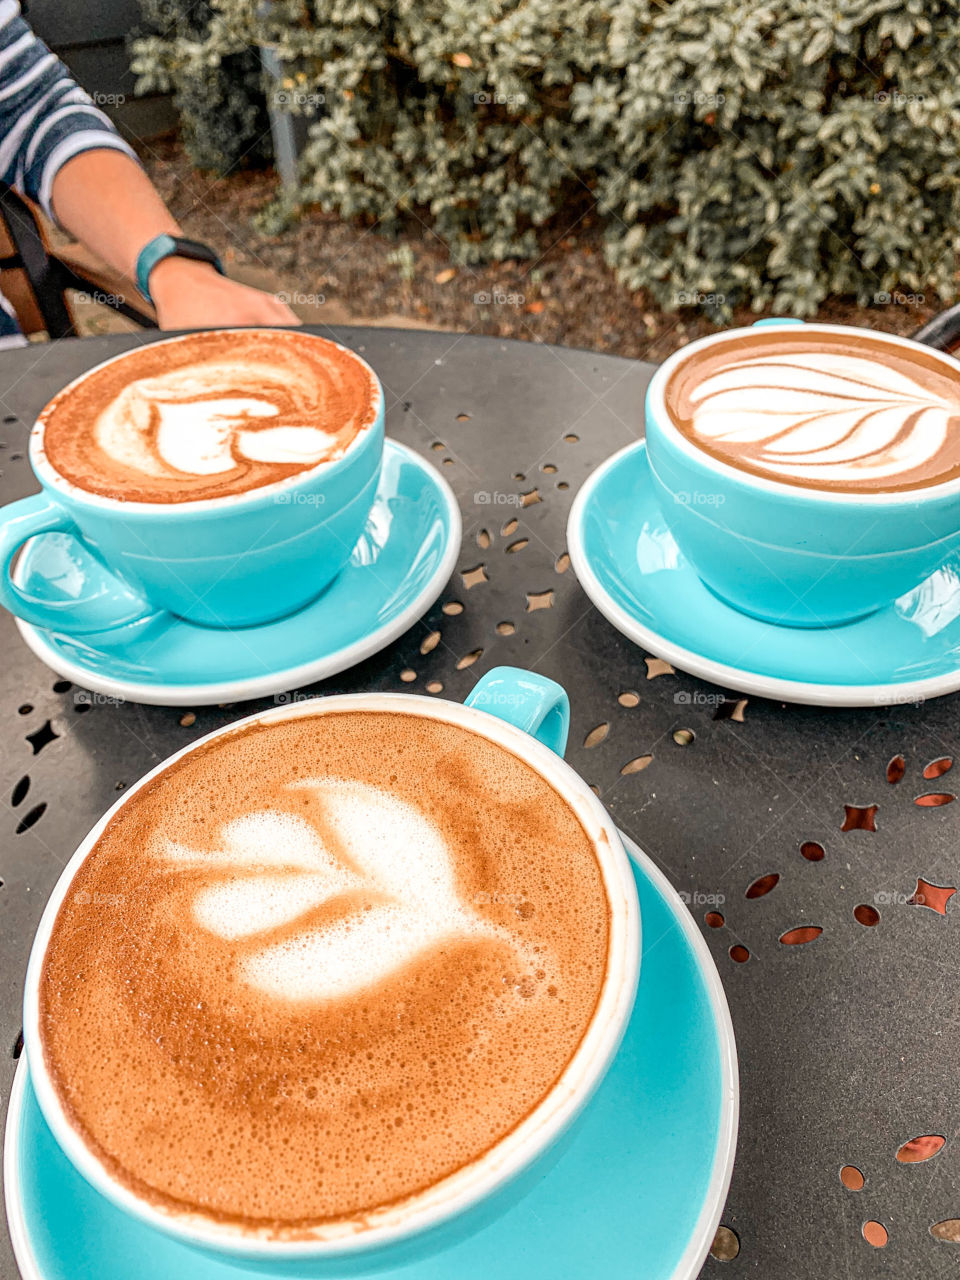 Fancy latte art with friends. 